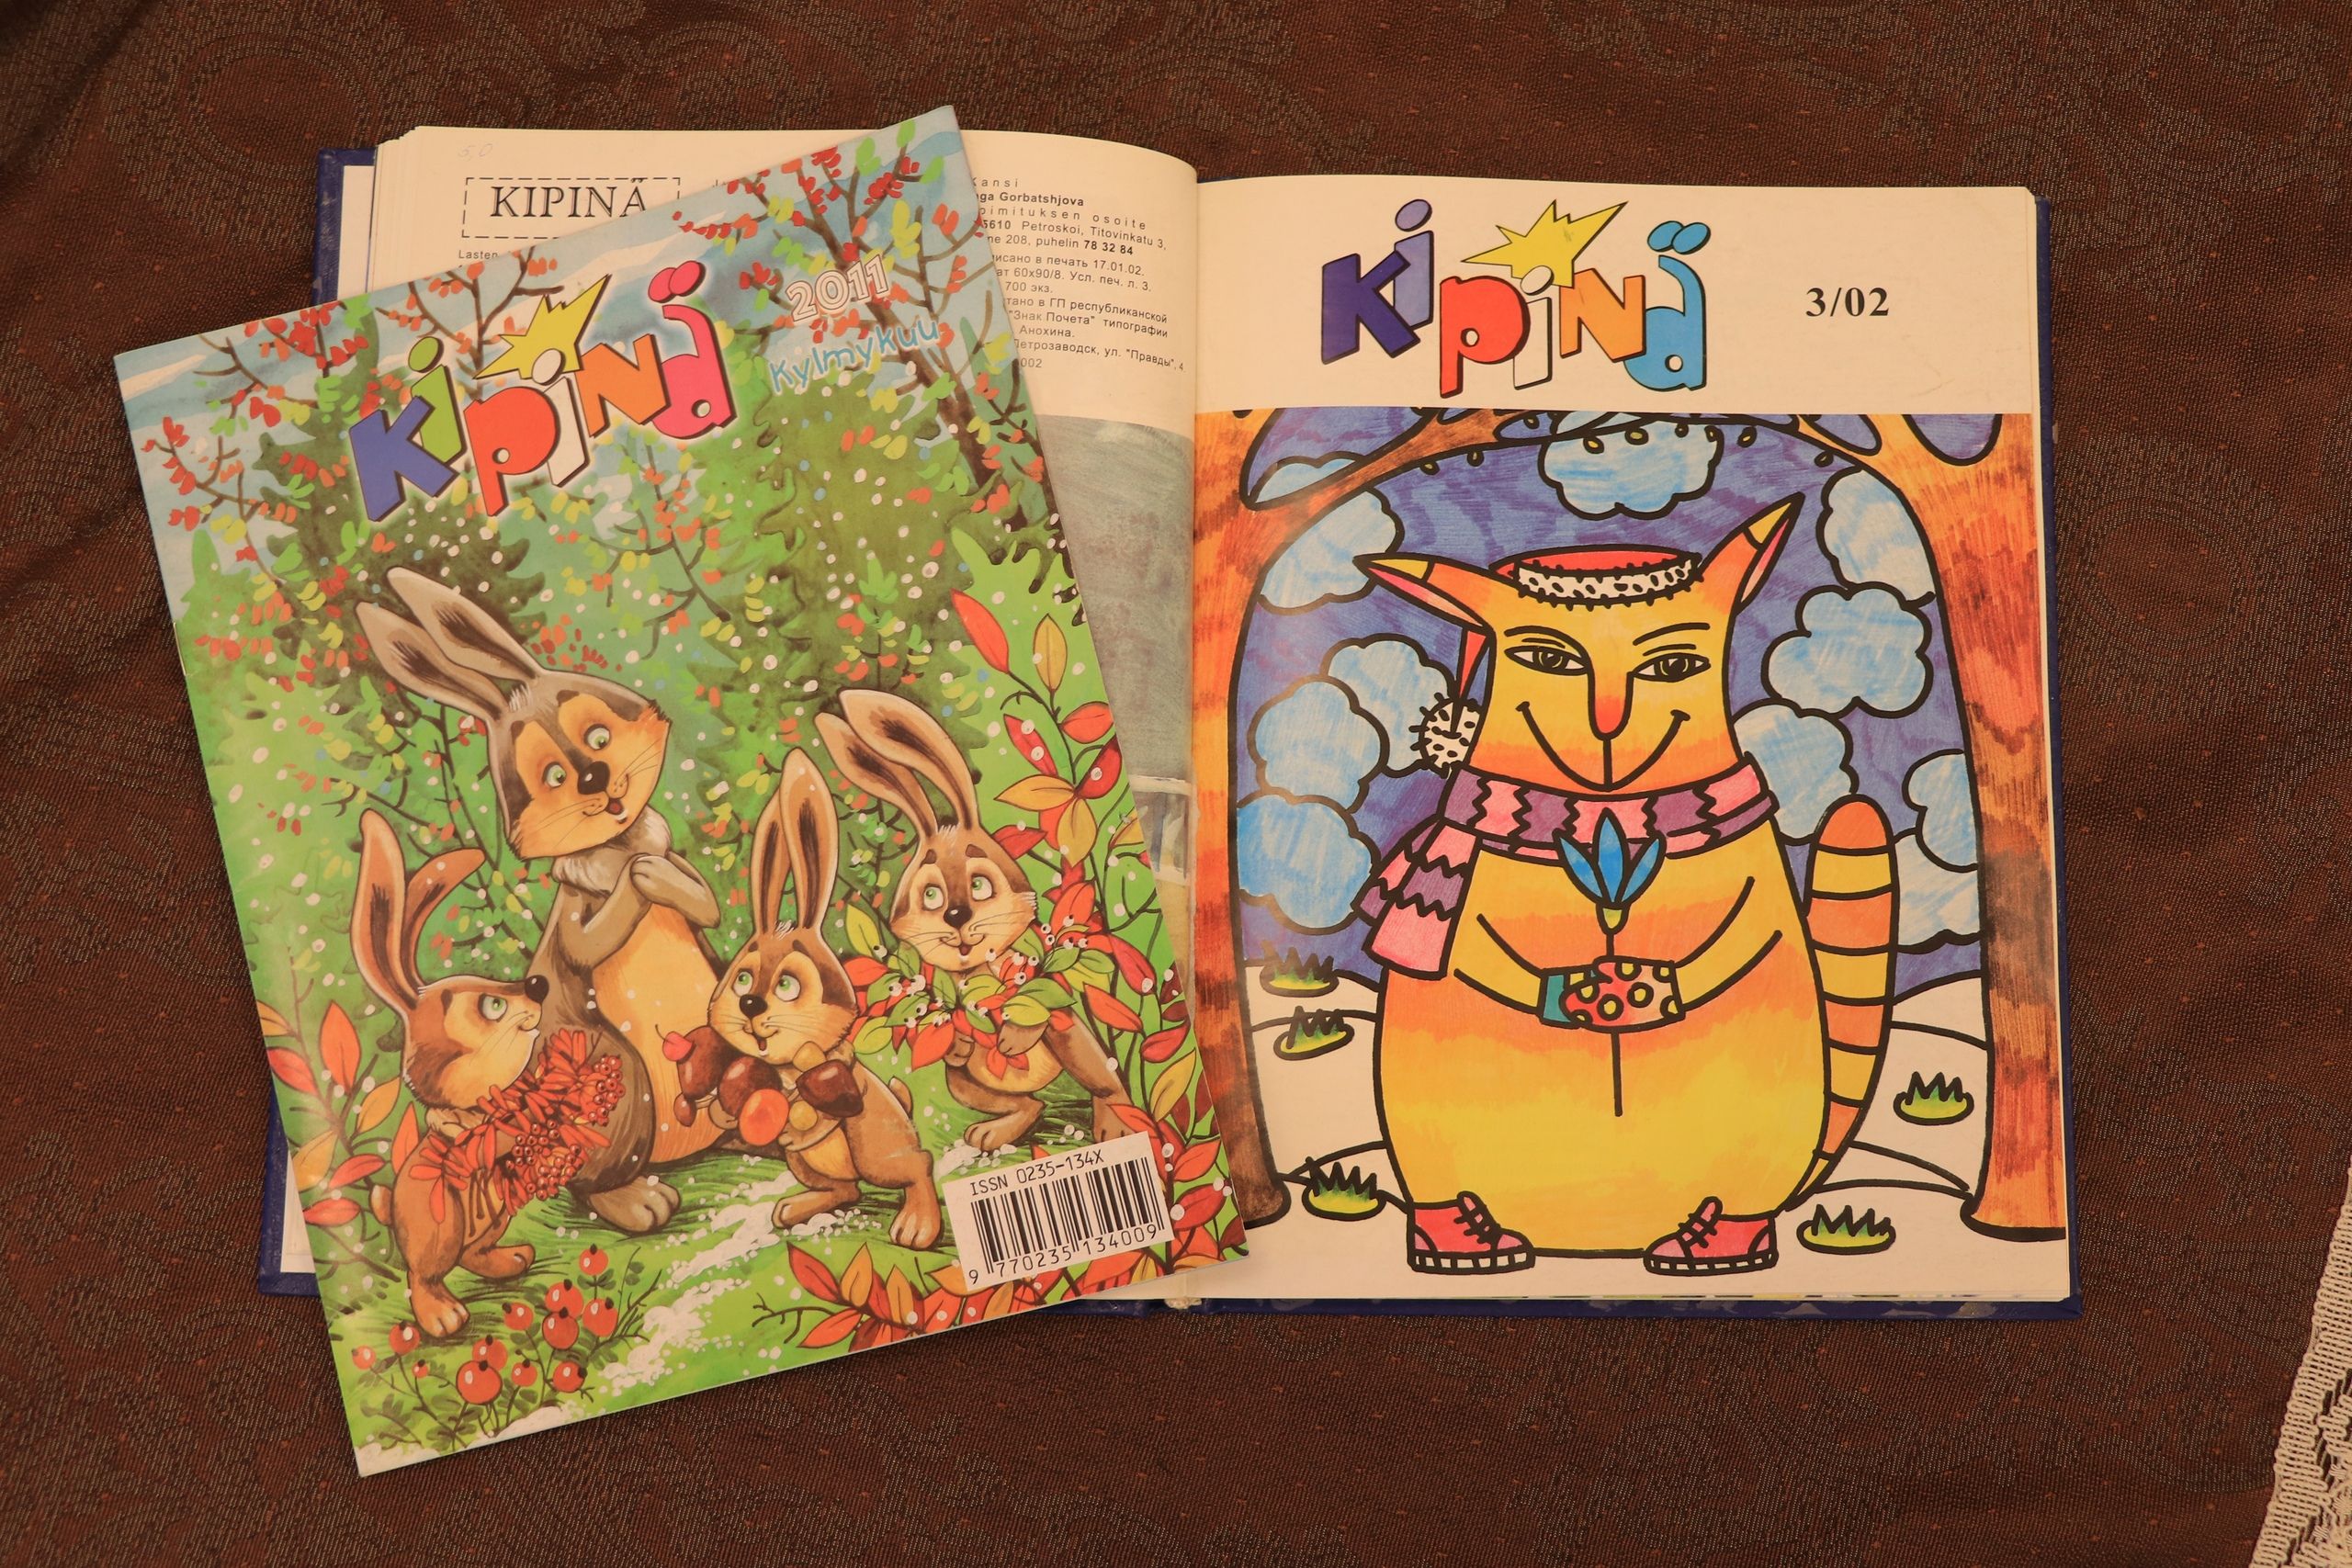 Kipinä-žurnualu rubei piäzemäh ilmah vuvvennu 1986 suomen kielel, piätoimittajannu oli Juakko Rugojev.  Kuva: Oma Media